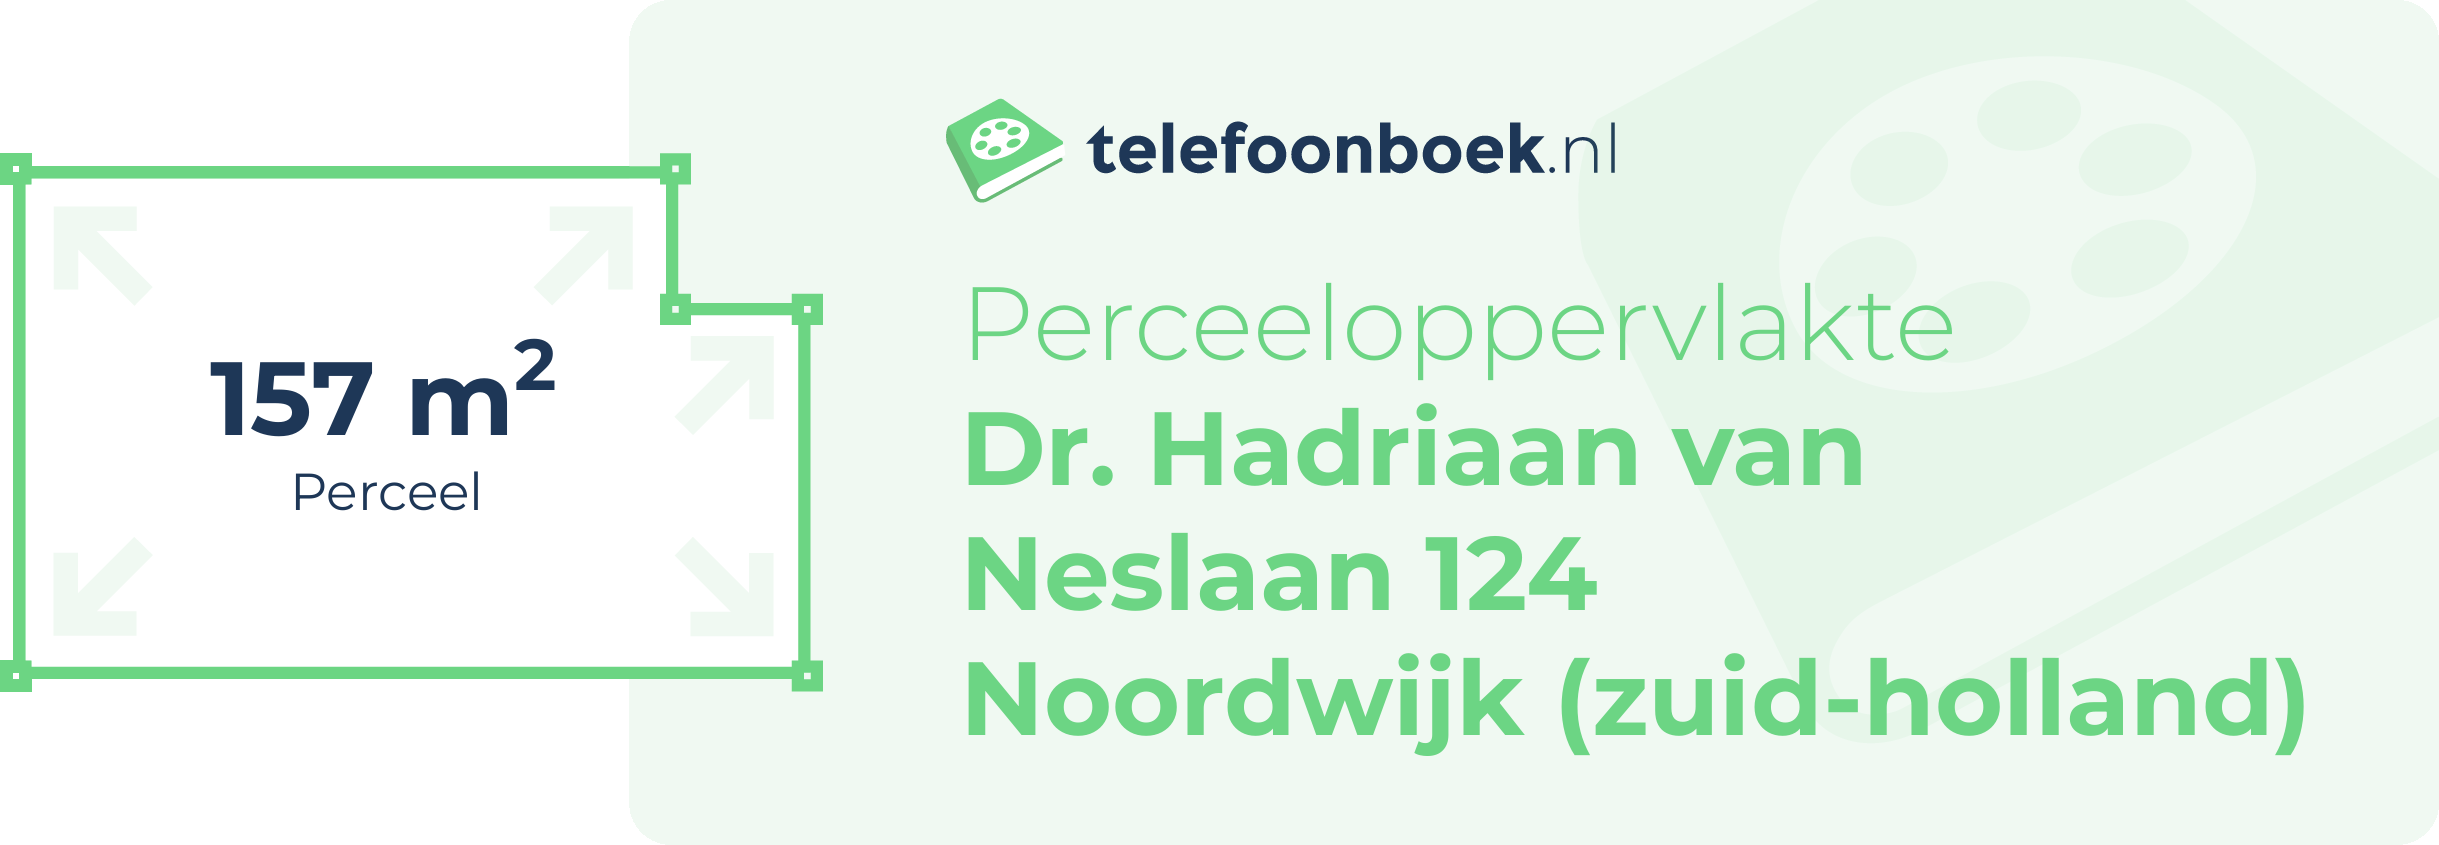 Perceeloppervlakte Dr. Hadriaan Van Neslaan 124 Noordwijk (Zuid-Holland)